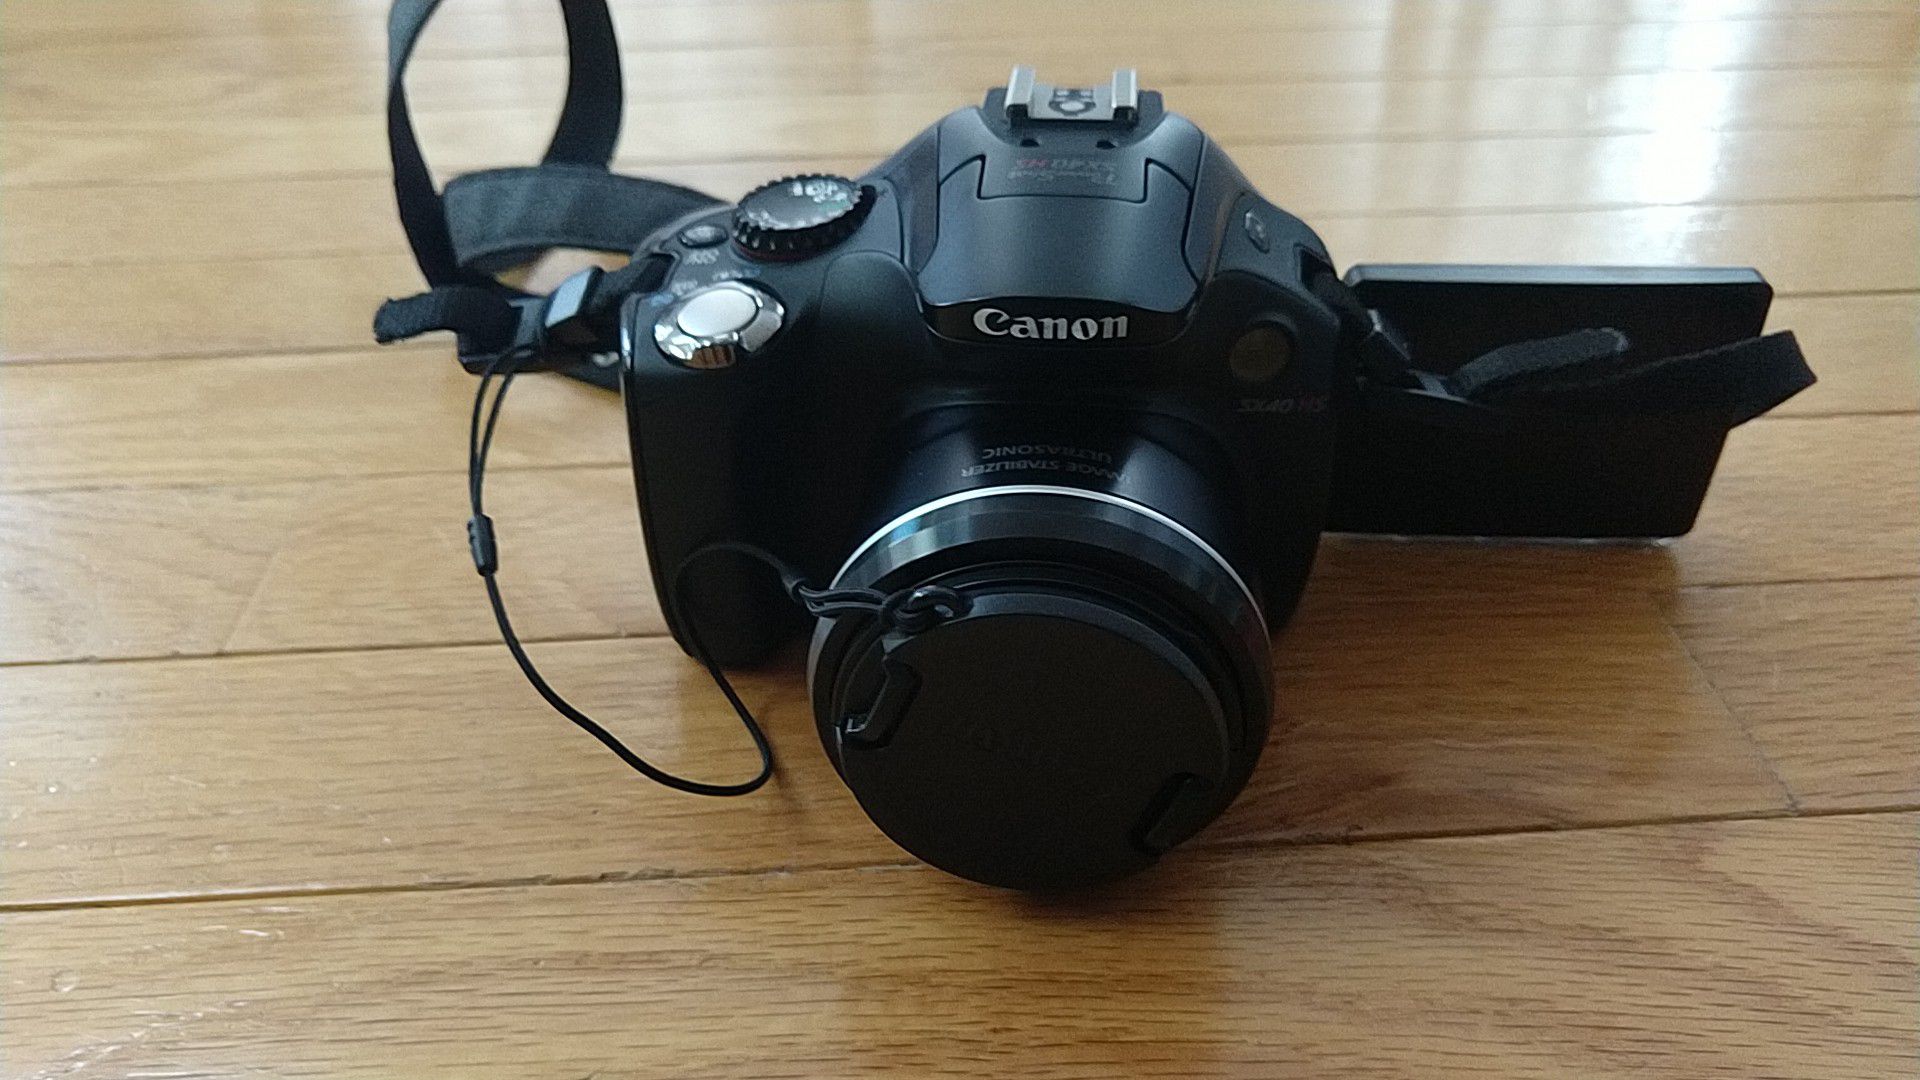 Canon SX40 HS 12.1MP Digital Camera